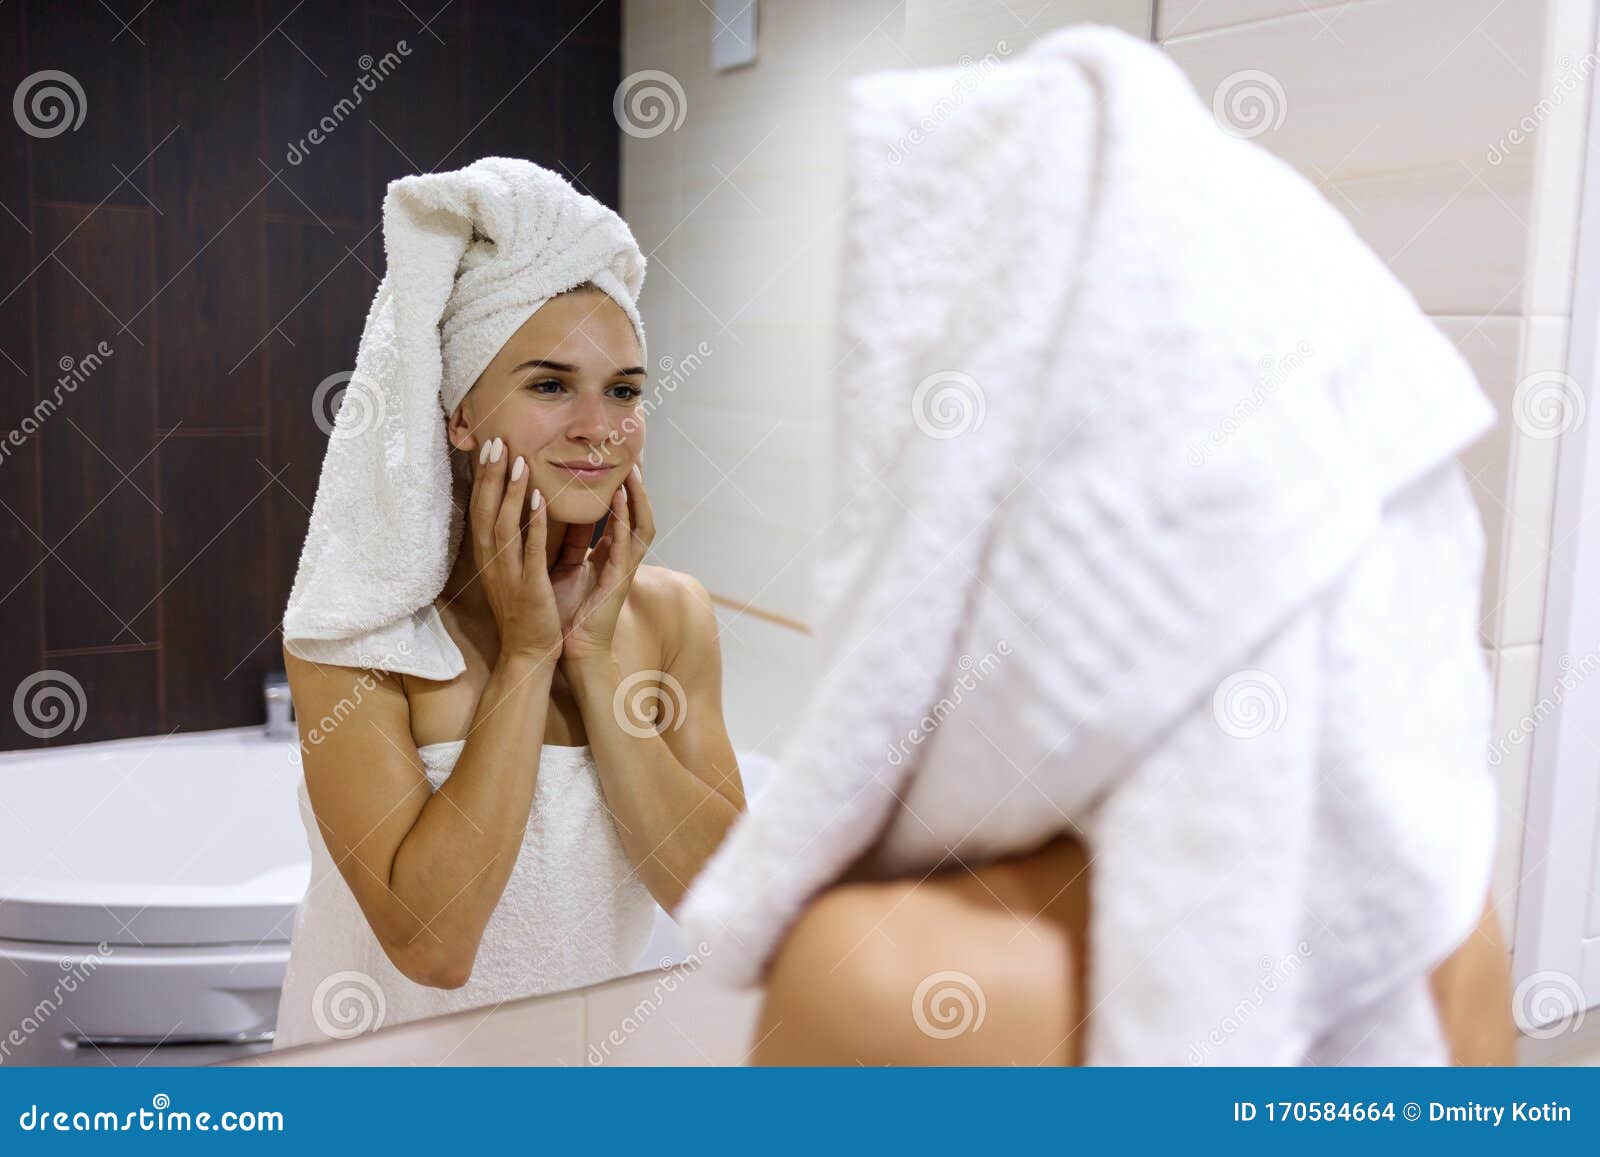 洗完澡护肤的女子图片下载 - 觅知网